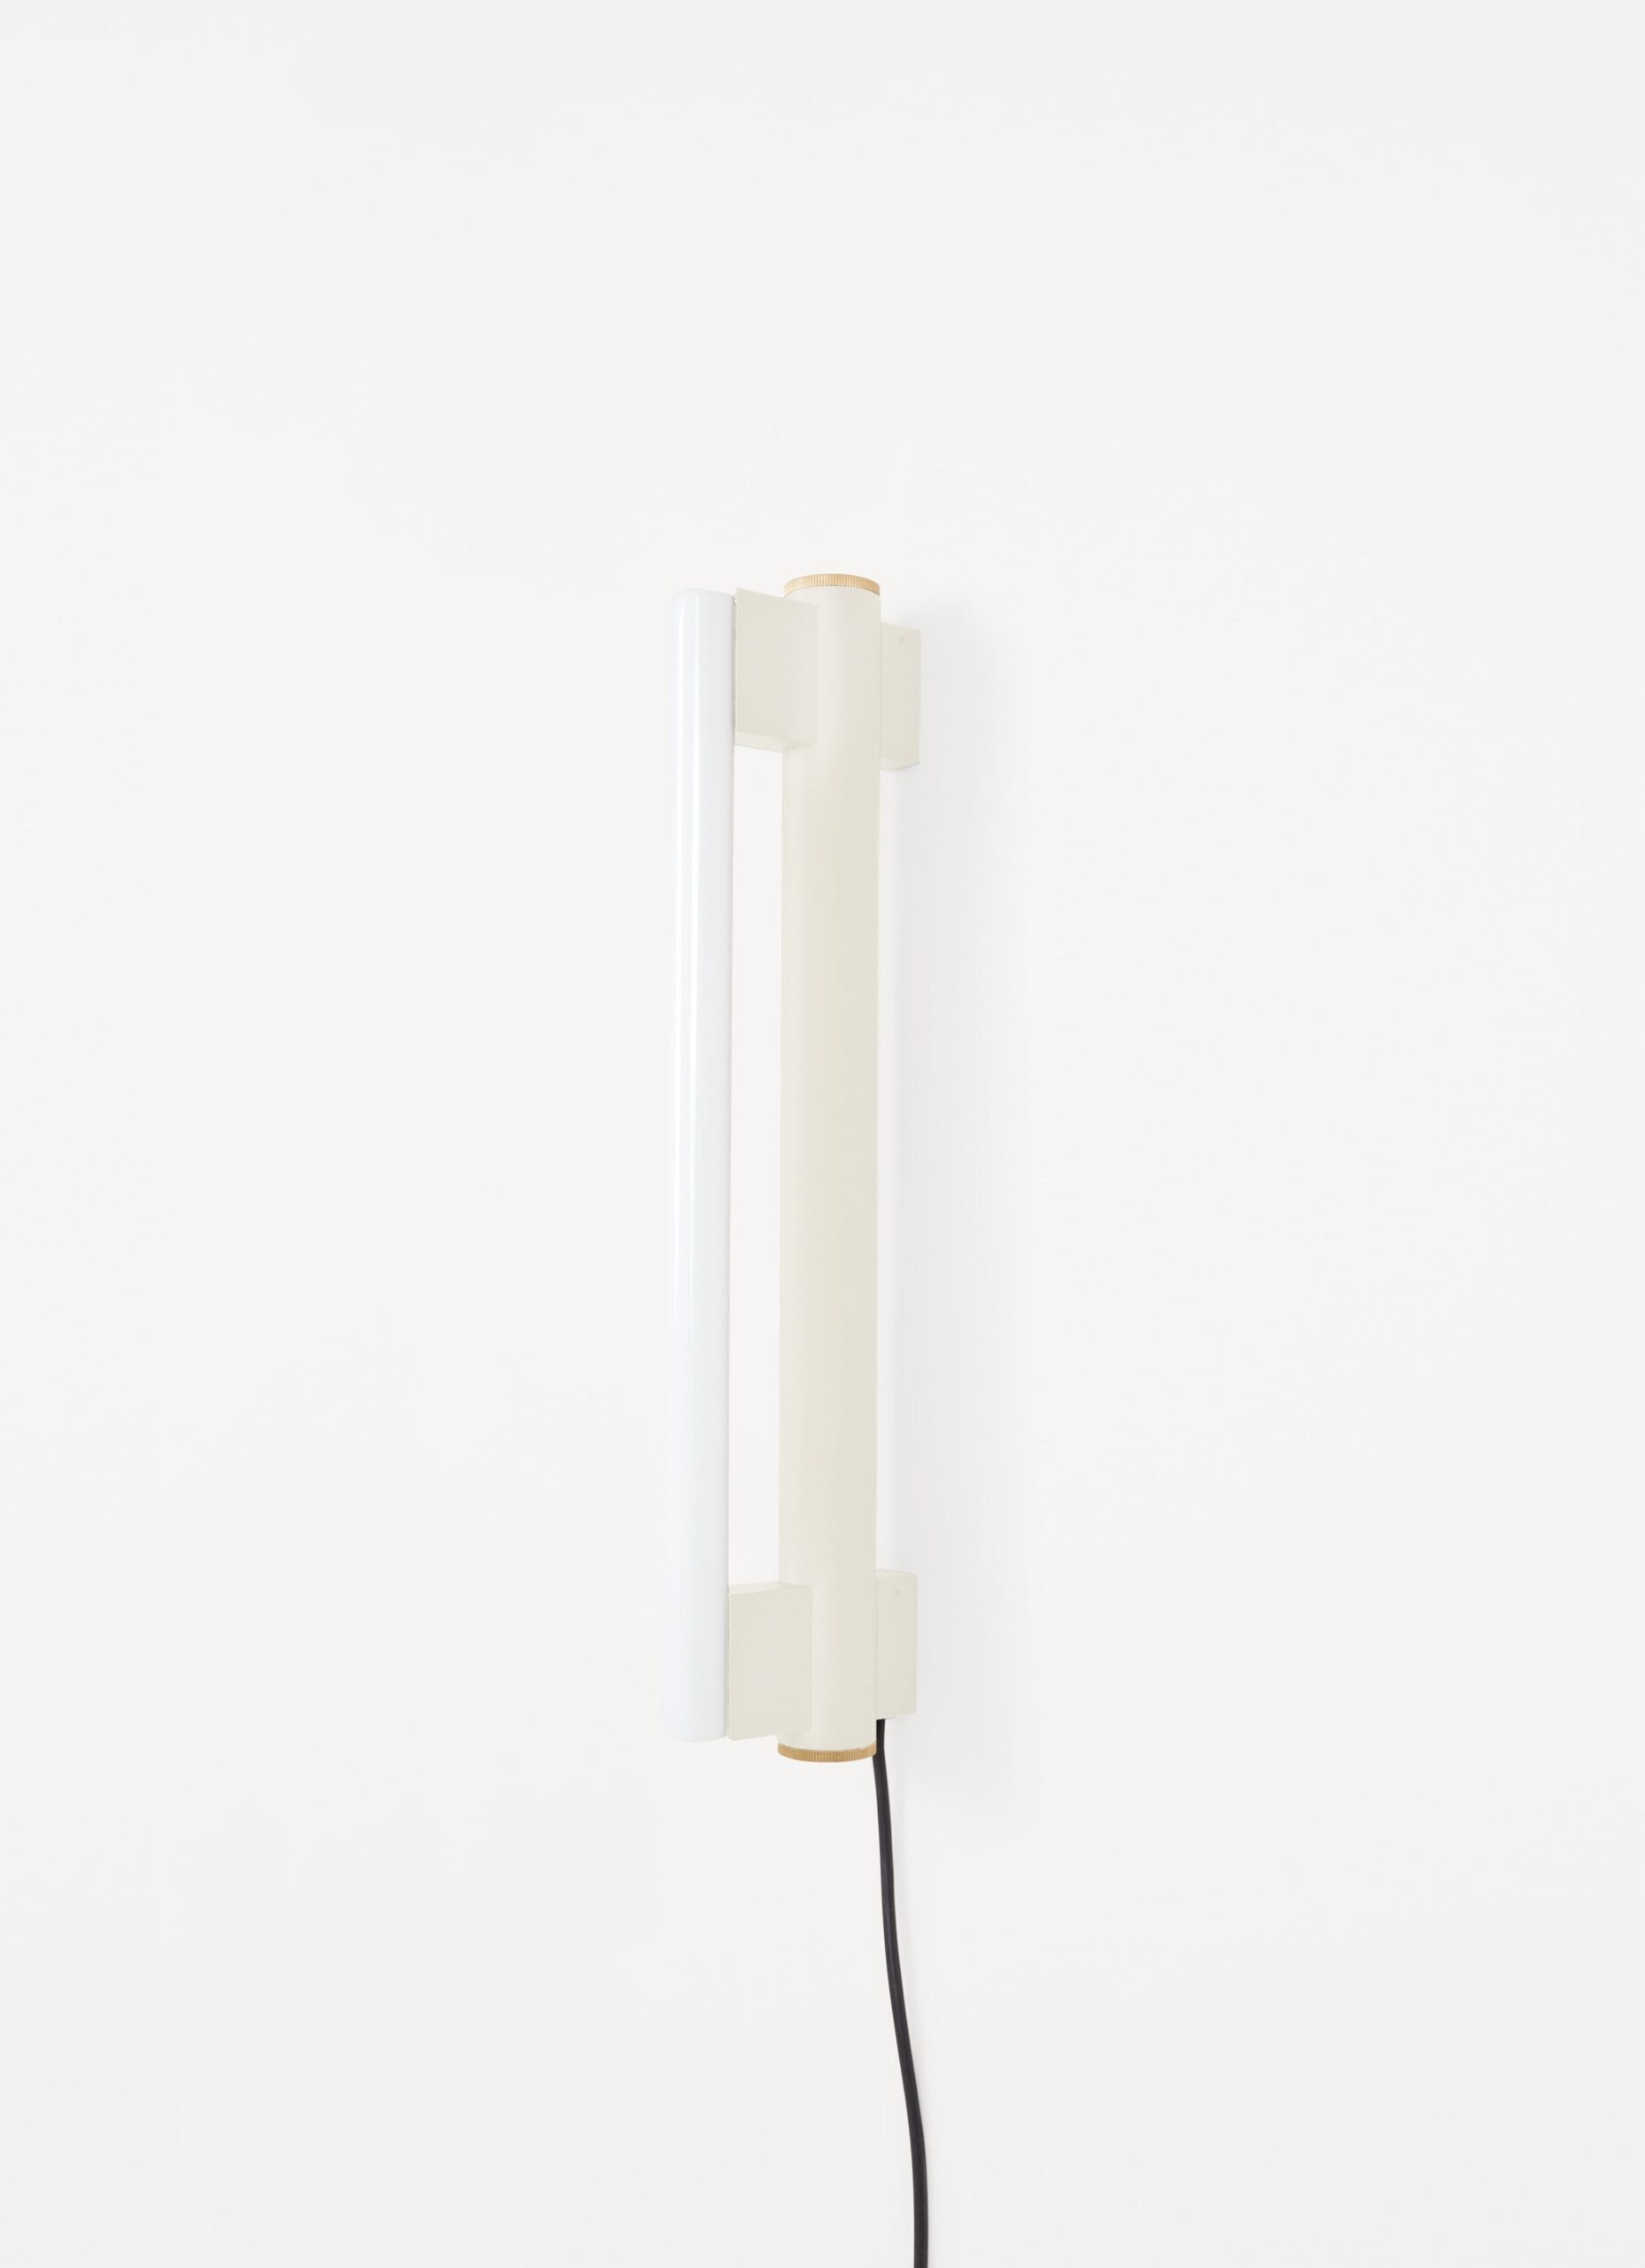 Frama - Eiffel Wall Lamp - Cream - Single 500